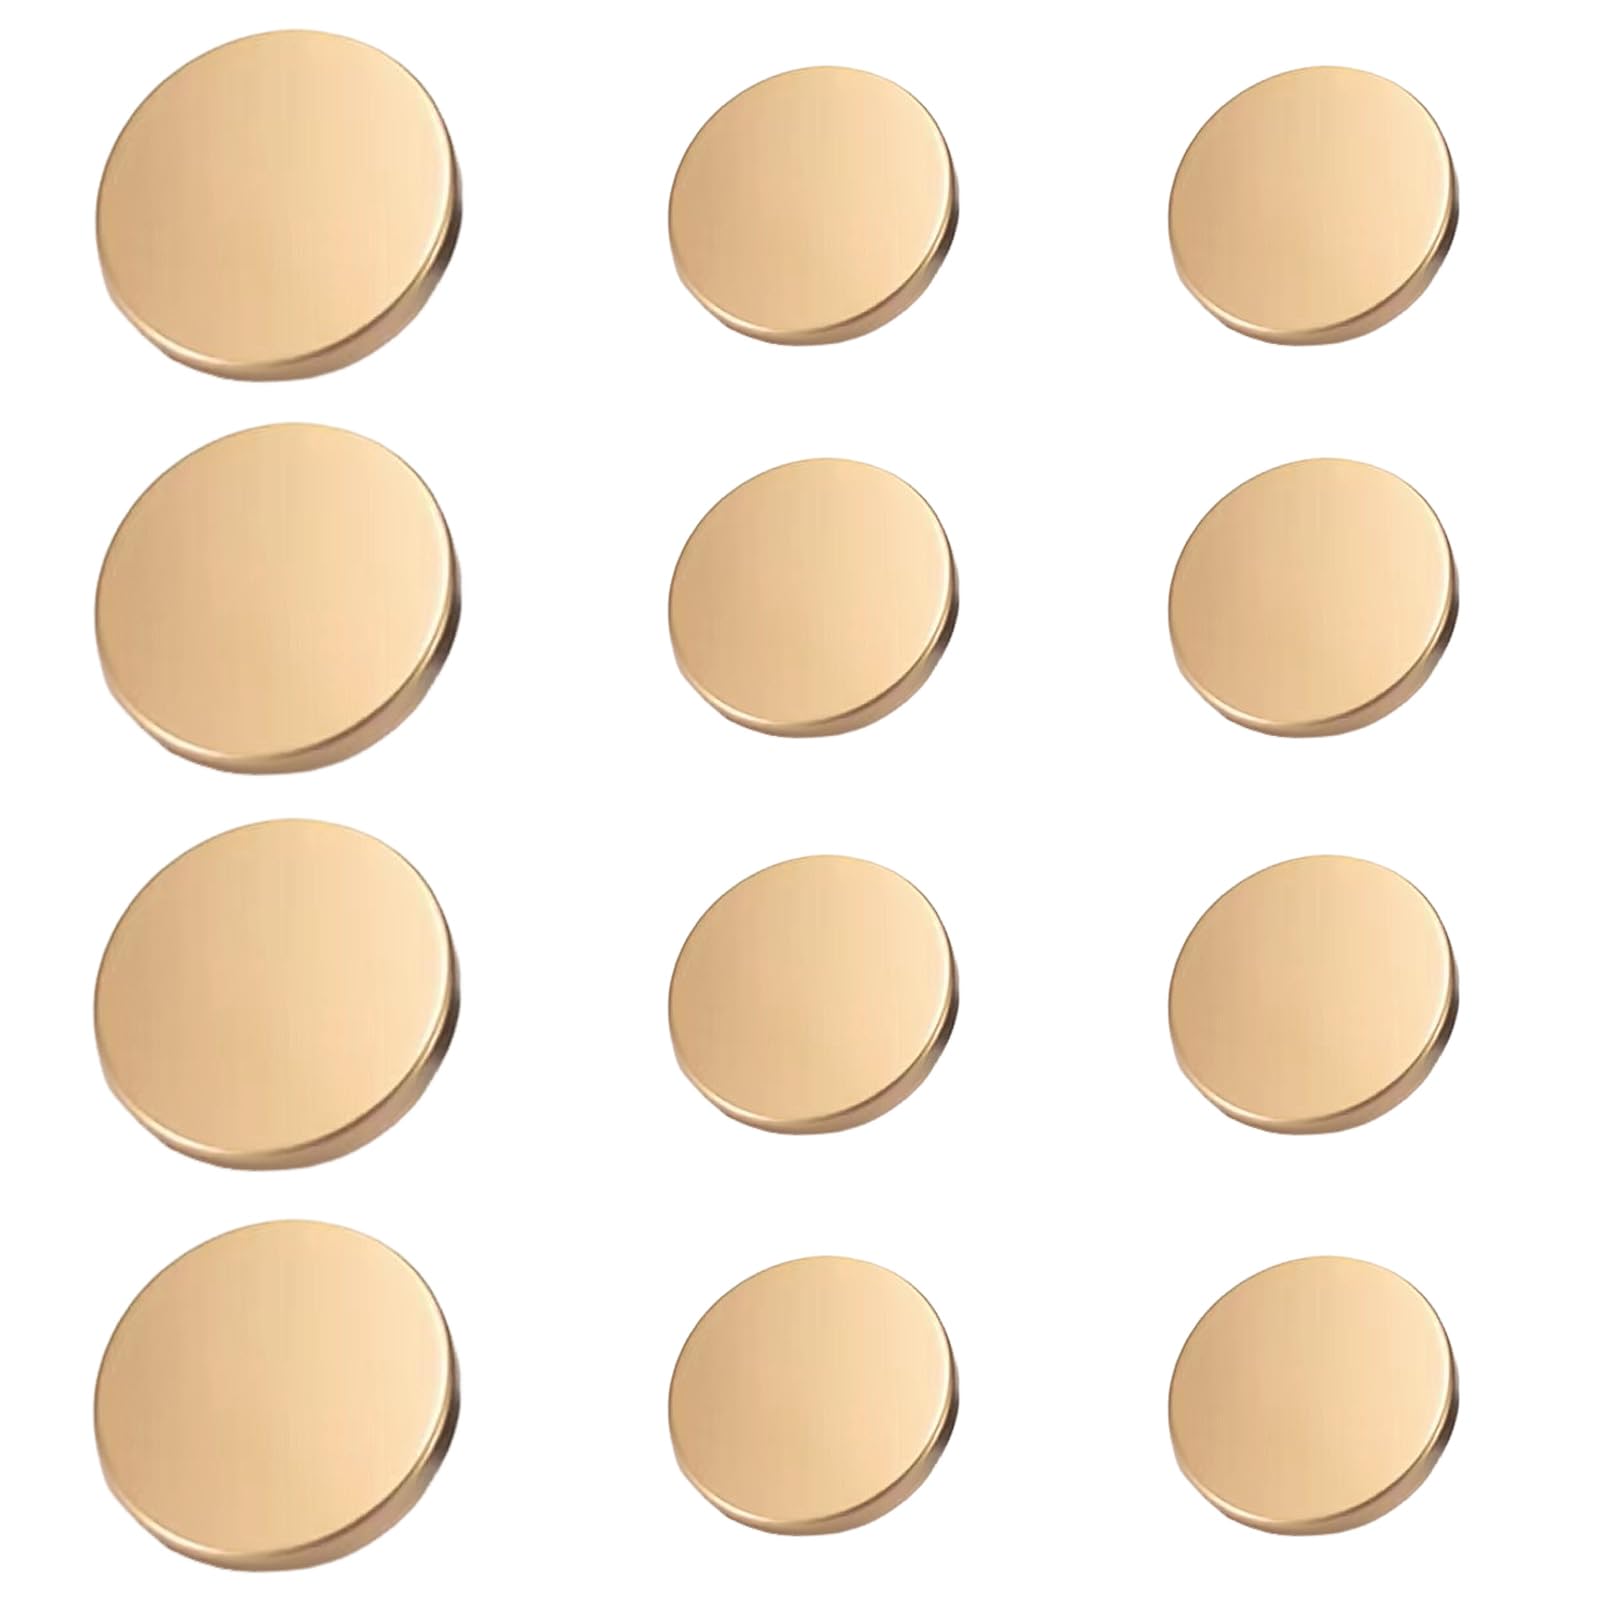 LIANHATA 金ボタン 12個セット ボタン 補修 アクセサリー ゴ−ルド色 カフス スーツ ジャケット用 裁縫用 ハンドメイド (マットゴールド)